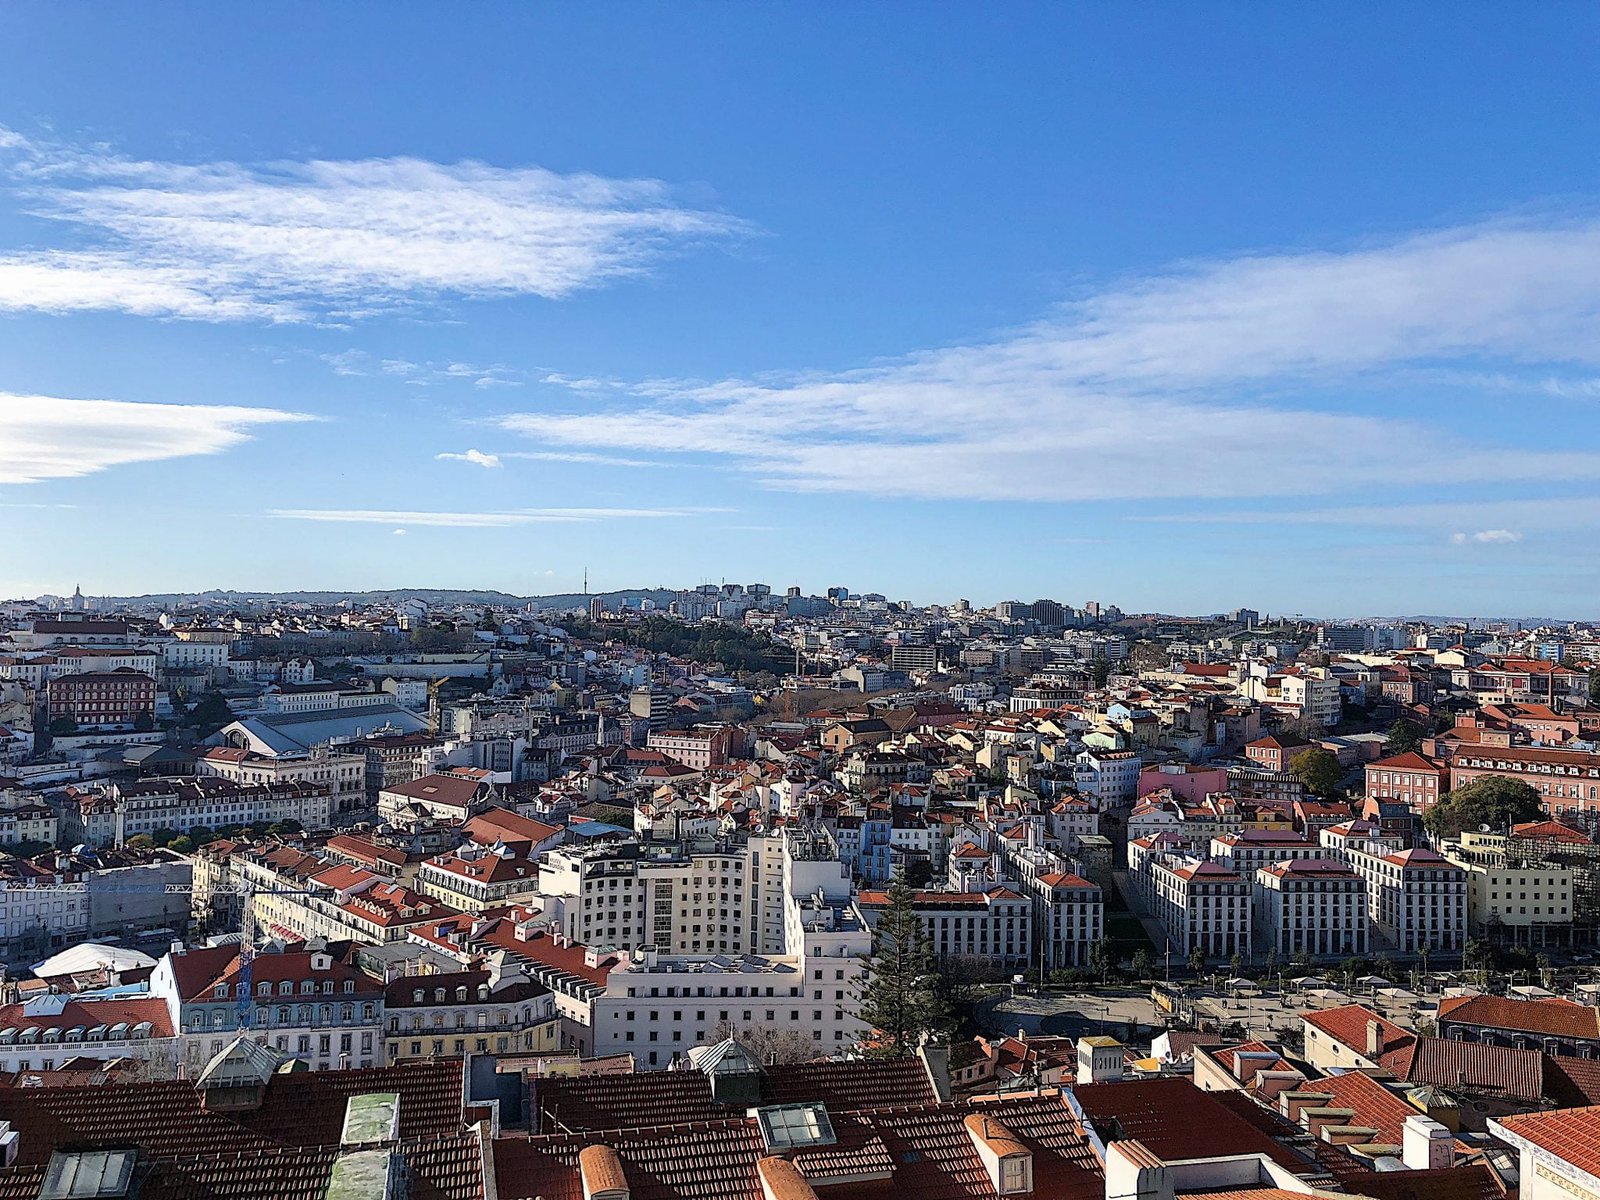 View of Castelo de S. Jorge, Lisbon